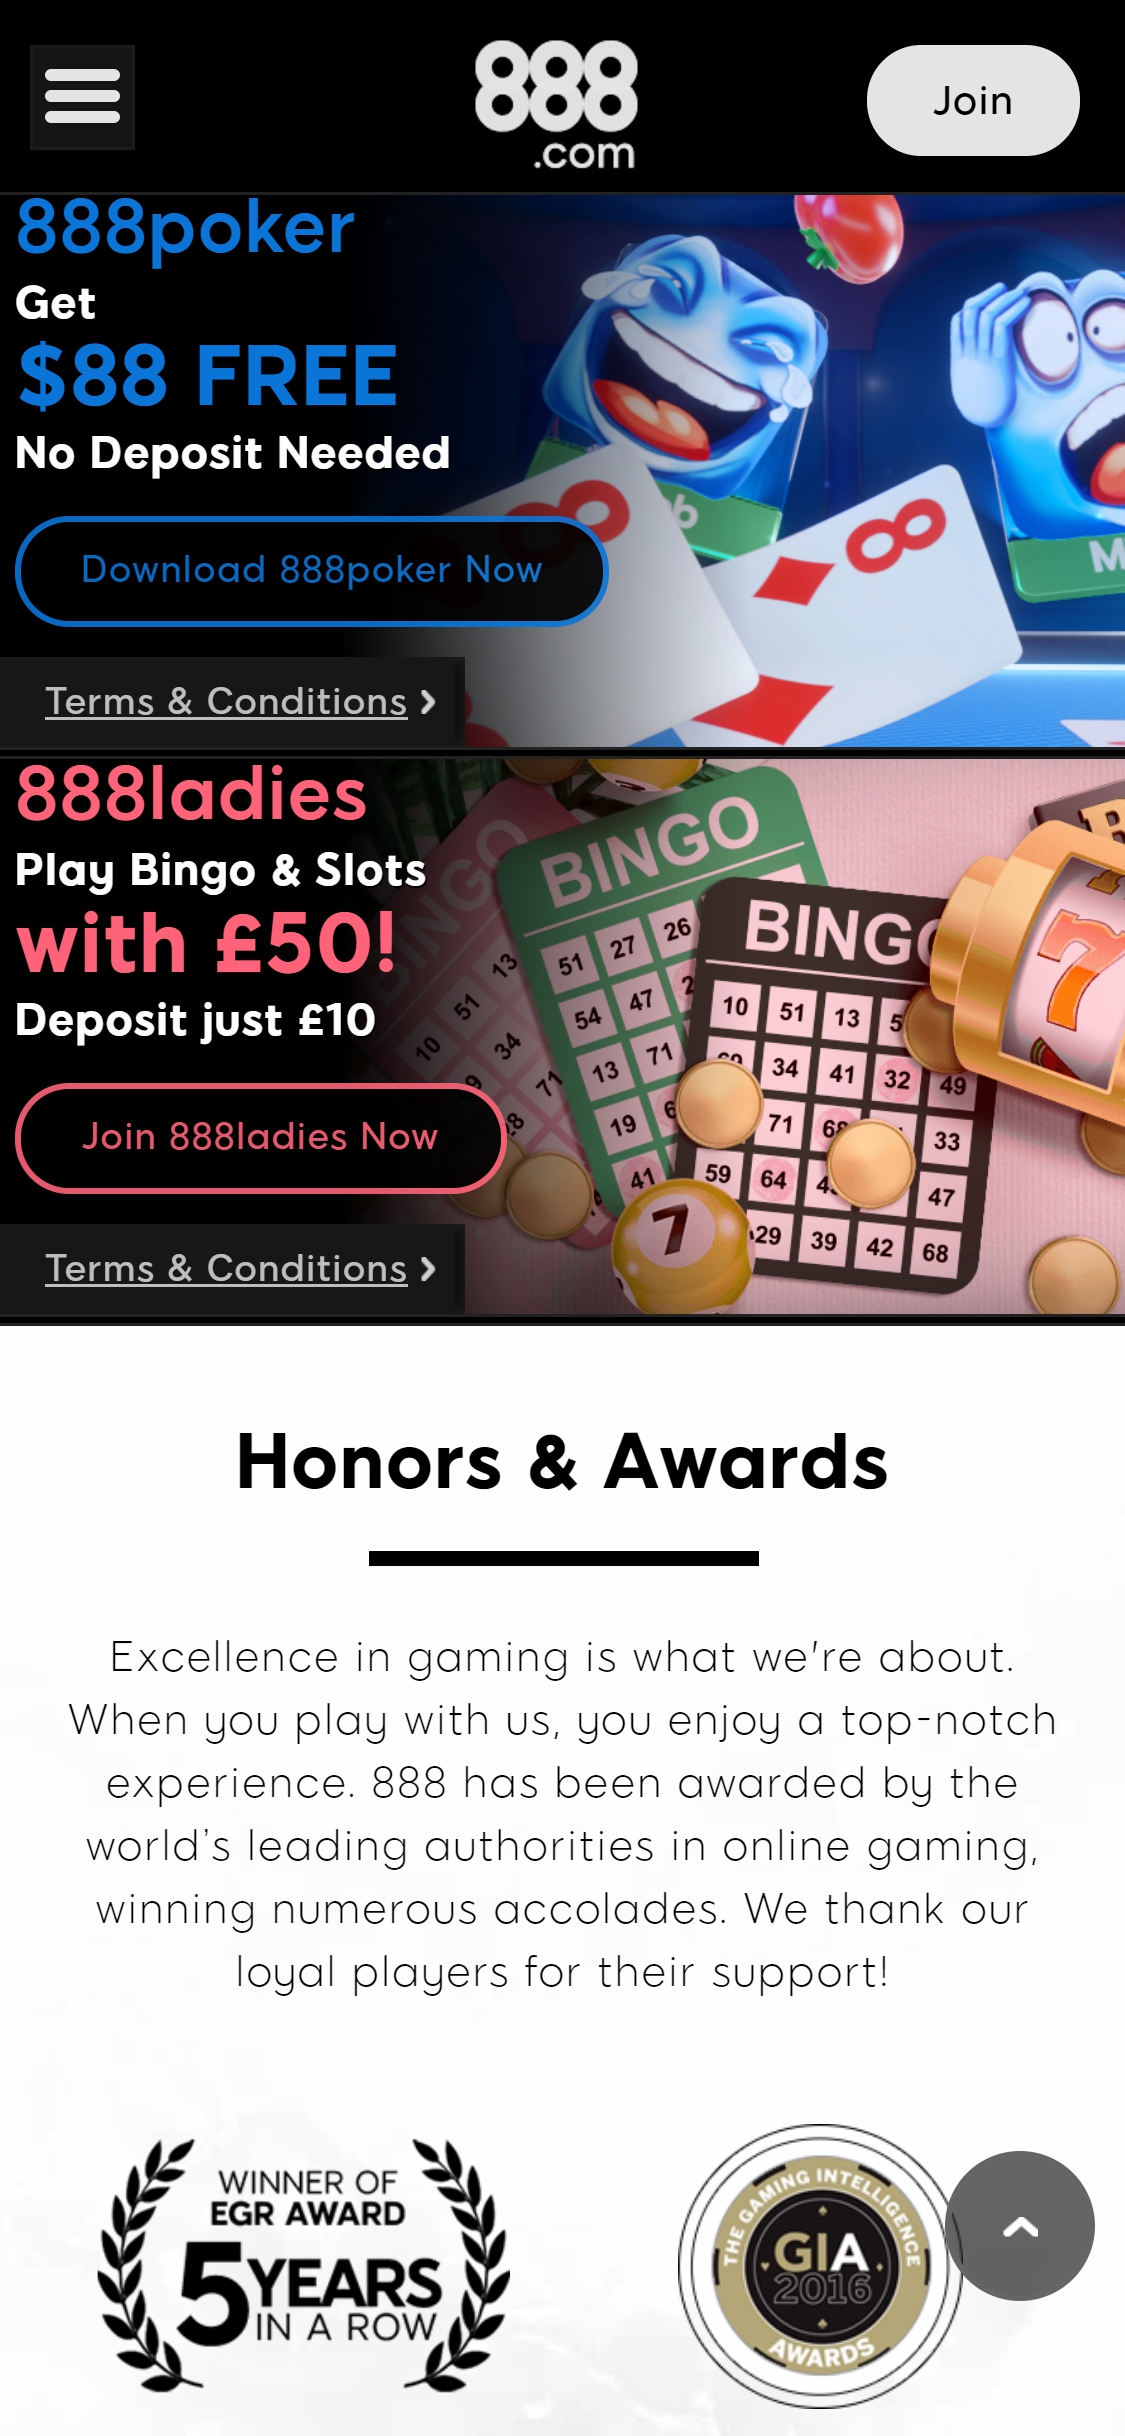 888.com Casino Mobile Review